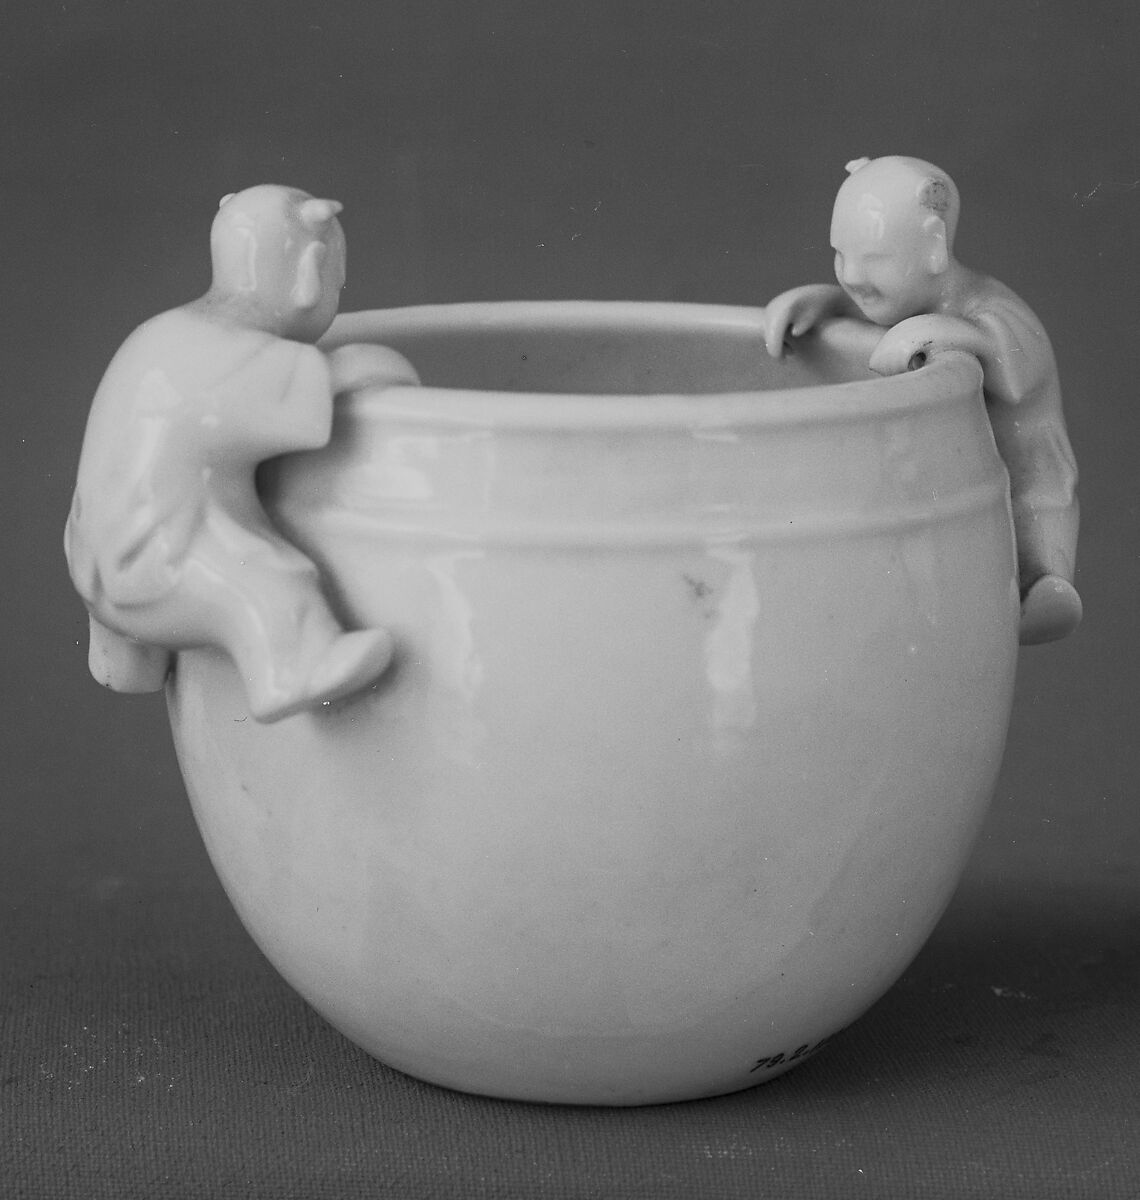 Water Pot with Boys, Porcelain (Fujian ware), China 